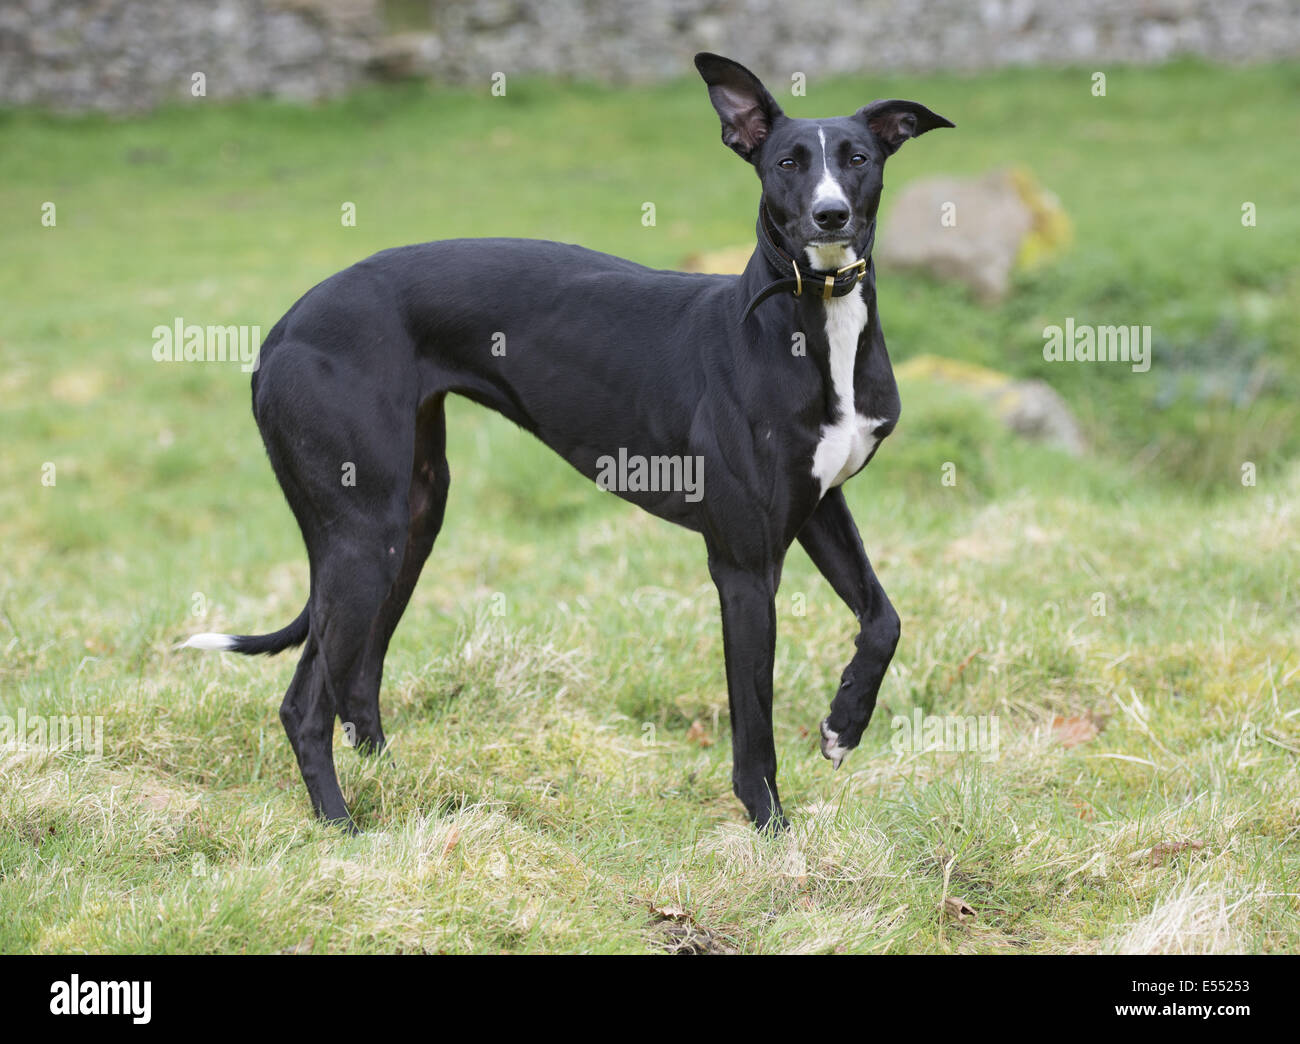 Chien domestique, mongrel (Greyhound rocé), adulte, portant un collier, debout sur l'herbe, Allendale, Northumberland, Angleterre, avril Banque D'Images